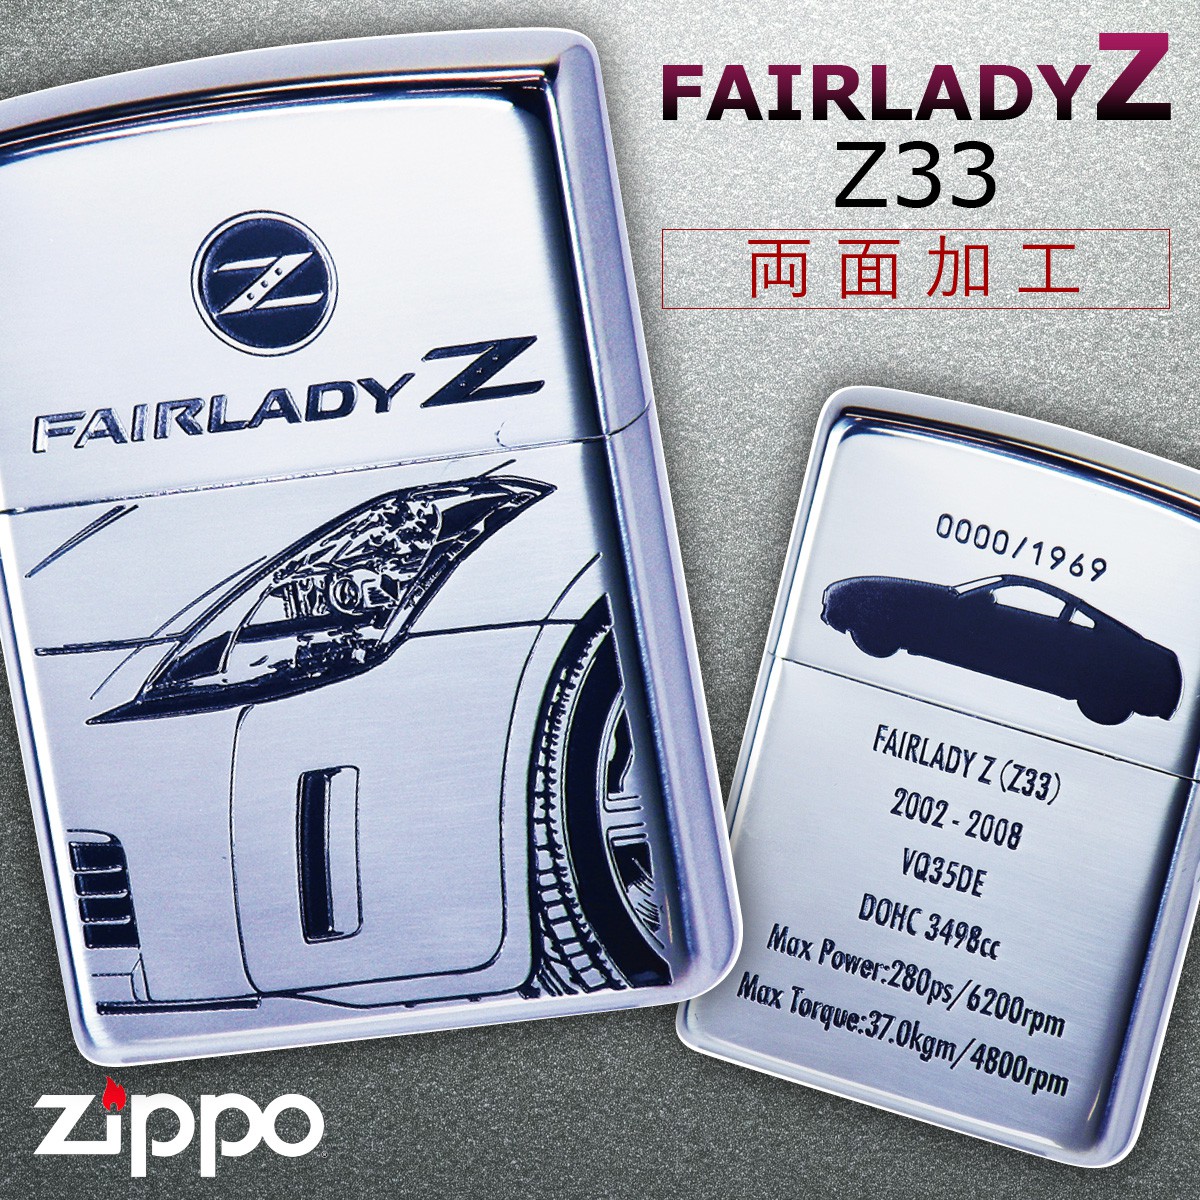 日本製 最大10 Offクーポン Zippo ライター ブランド フェアレディz ジッポーライター Zippoライター Zippoライター Zippo ジッポー Zippo Fairlady Z Z33 ギフト プレゼント 贈り物 返品不可 Intouchwireless Ca